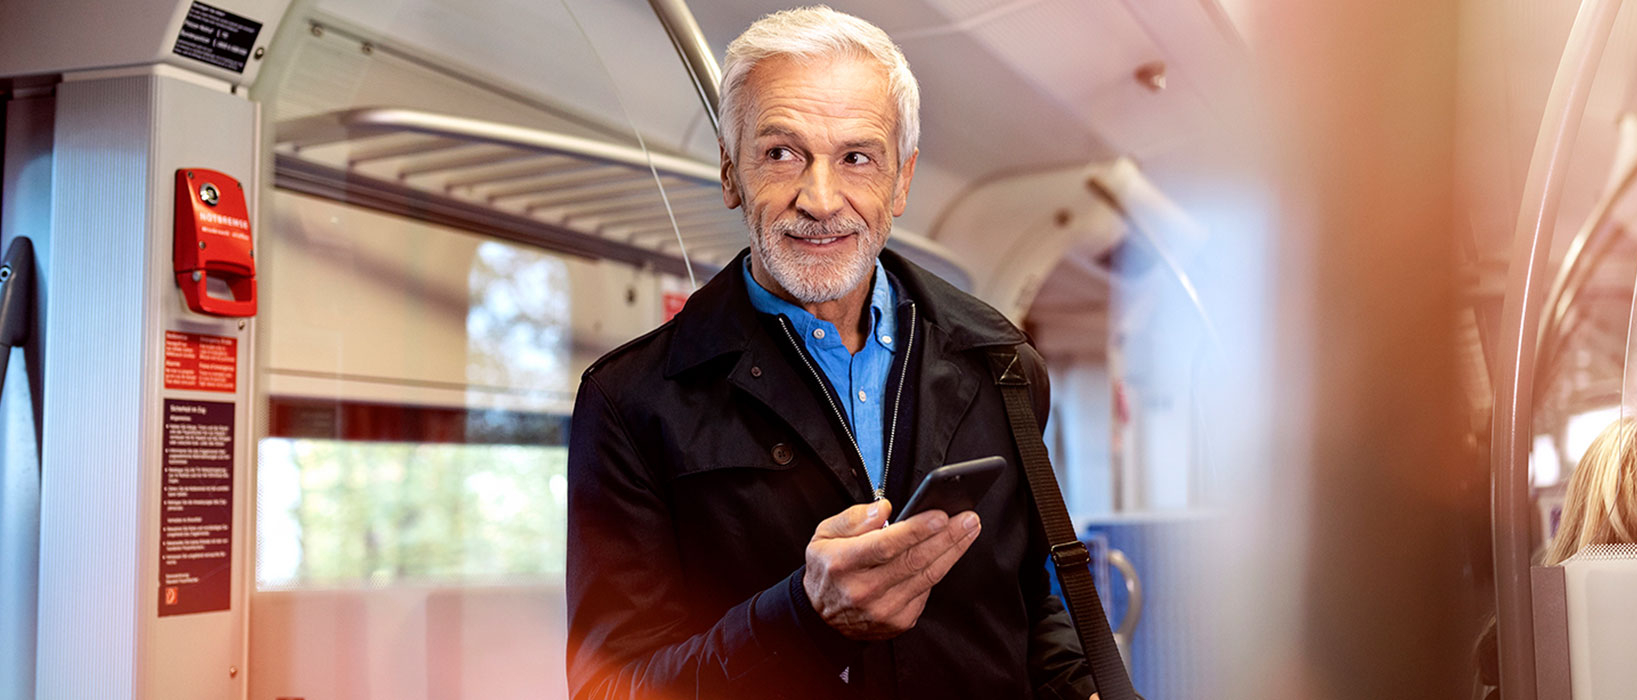 Ein gut gekleideter Senior steht in einer Bahn und schaut auf sein Handy.